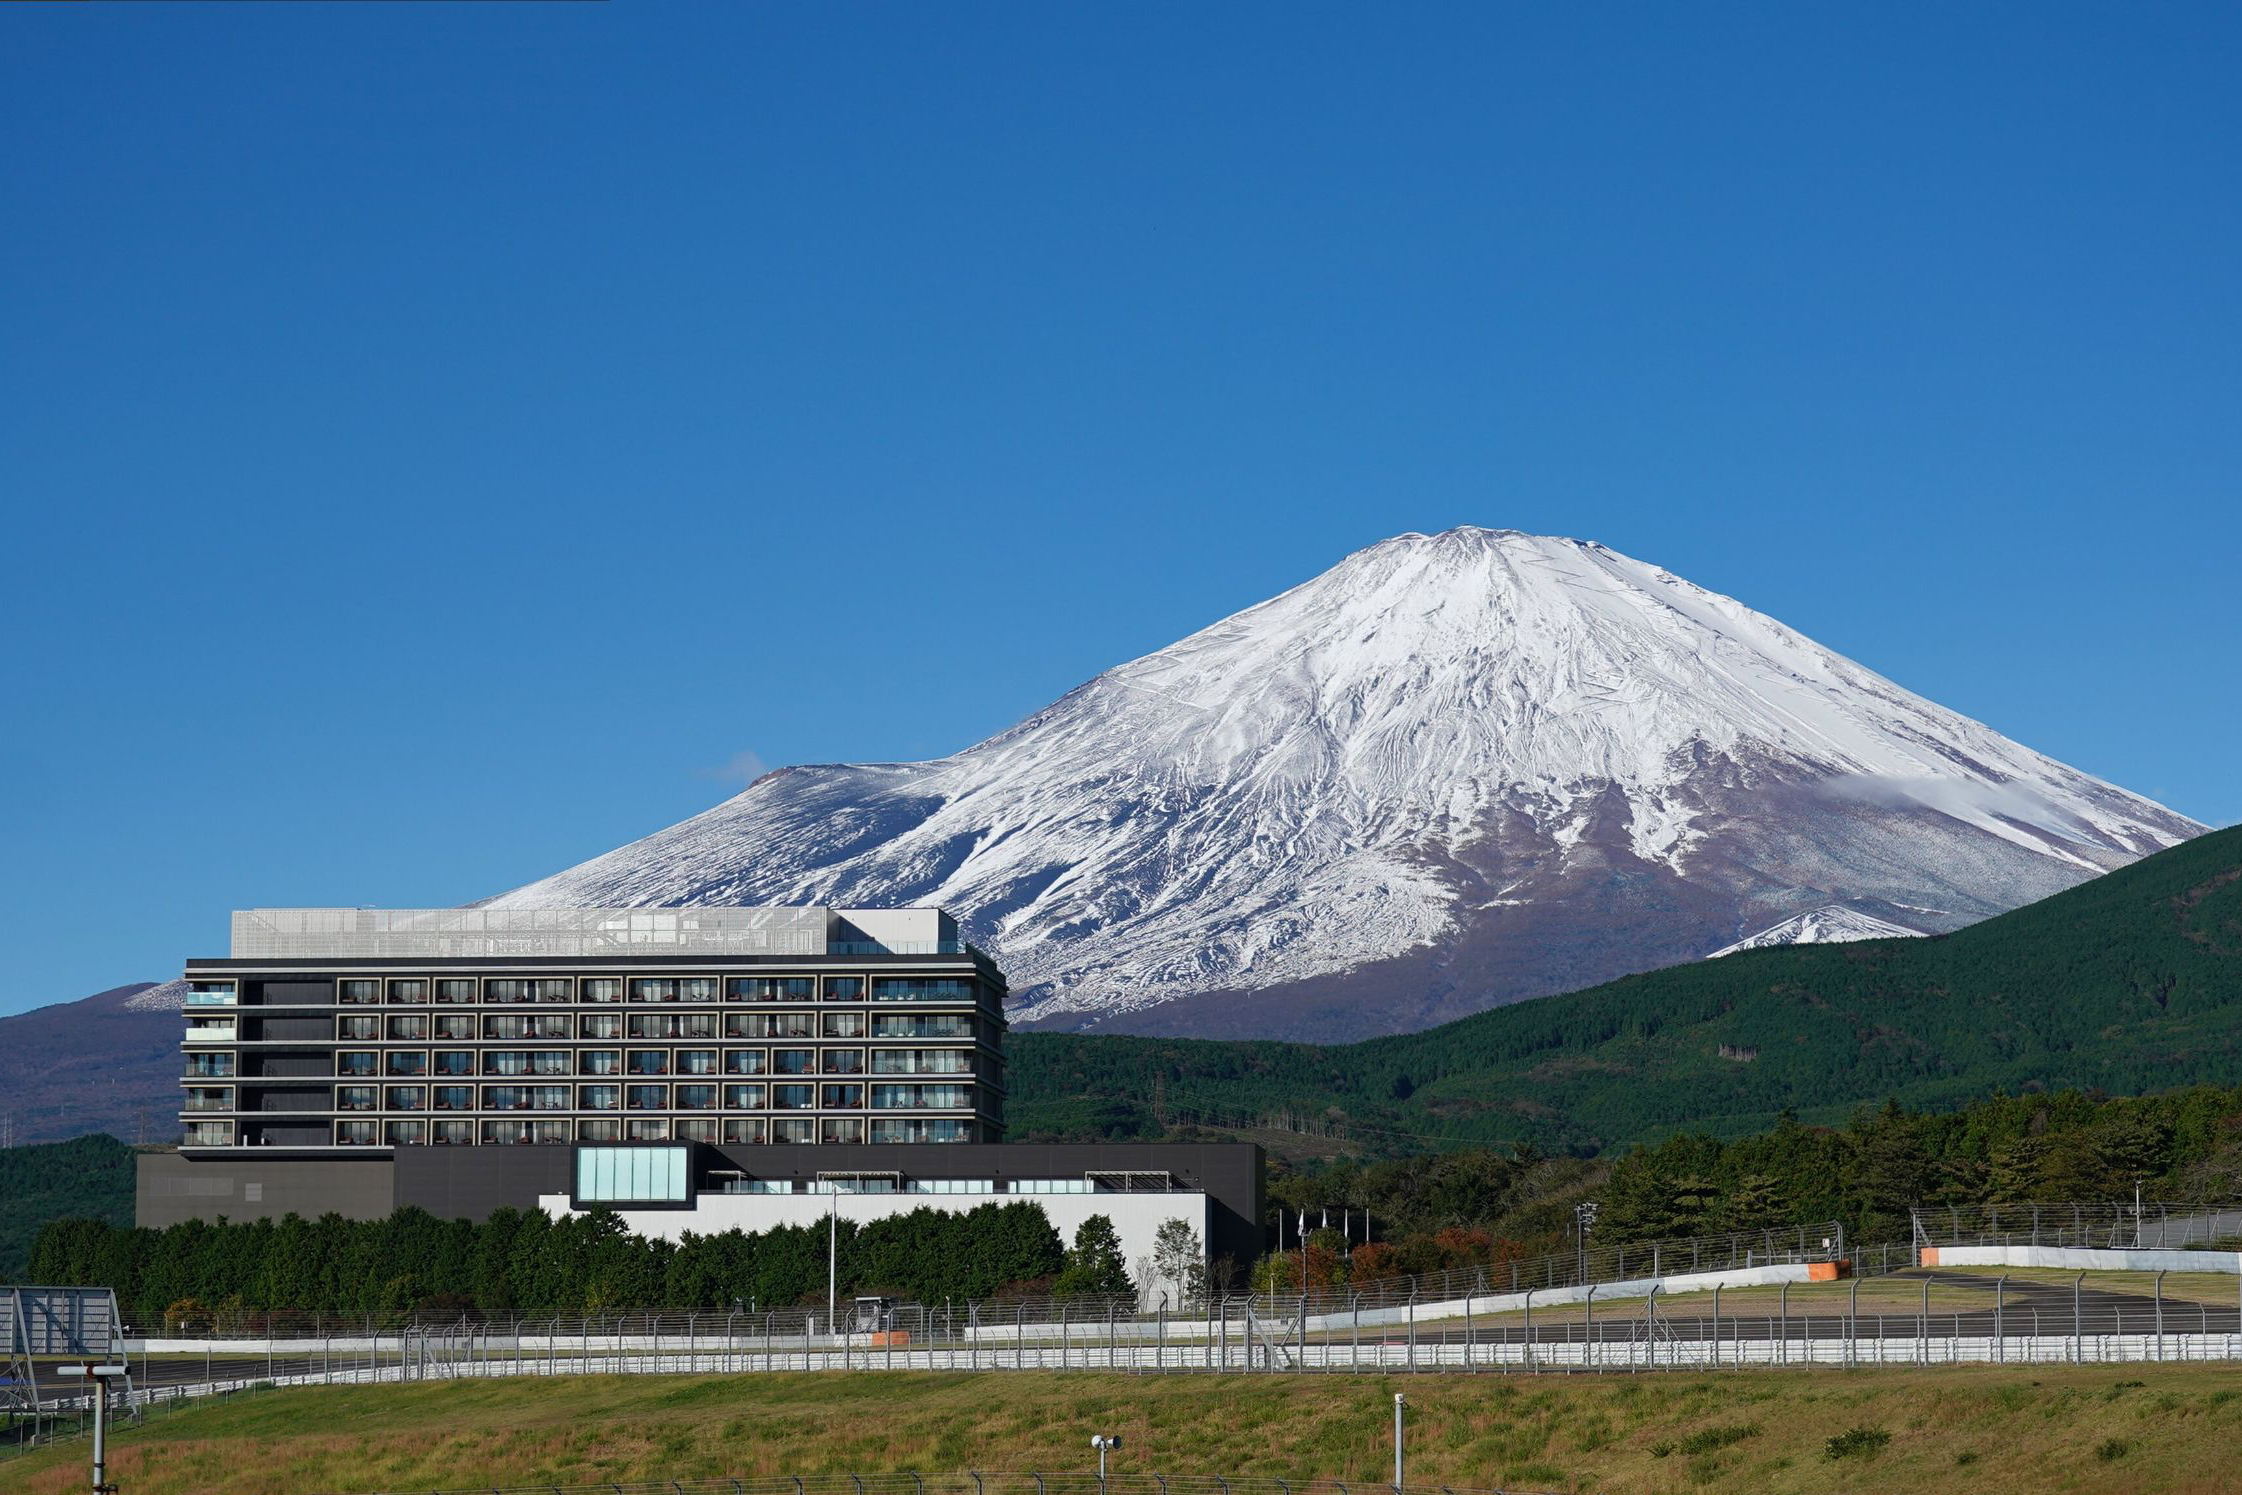 冬の富士山とホテル外観